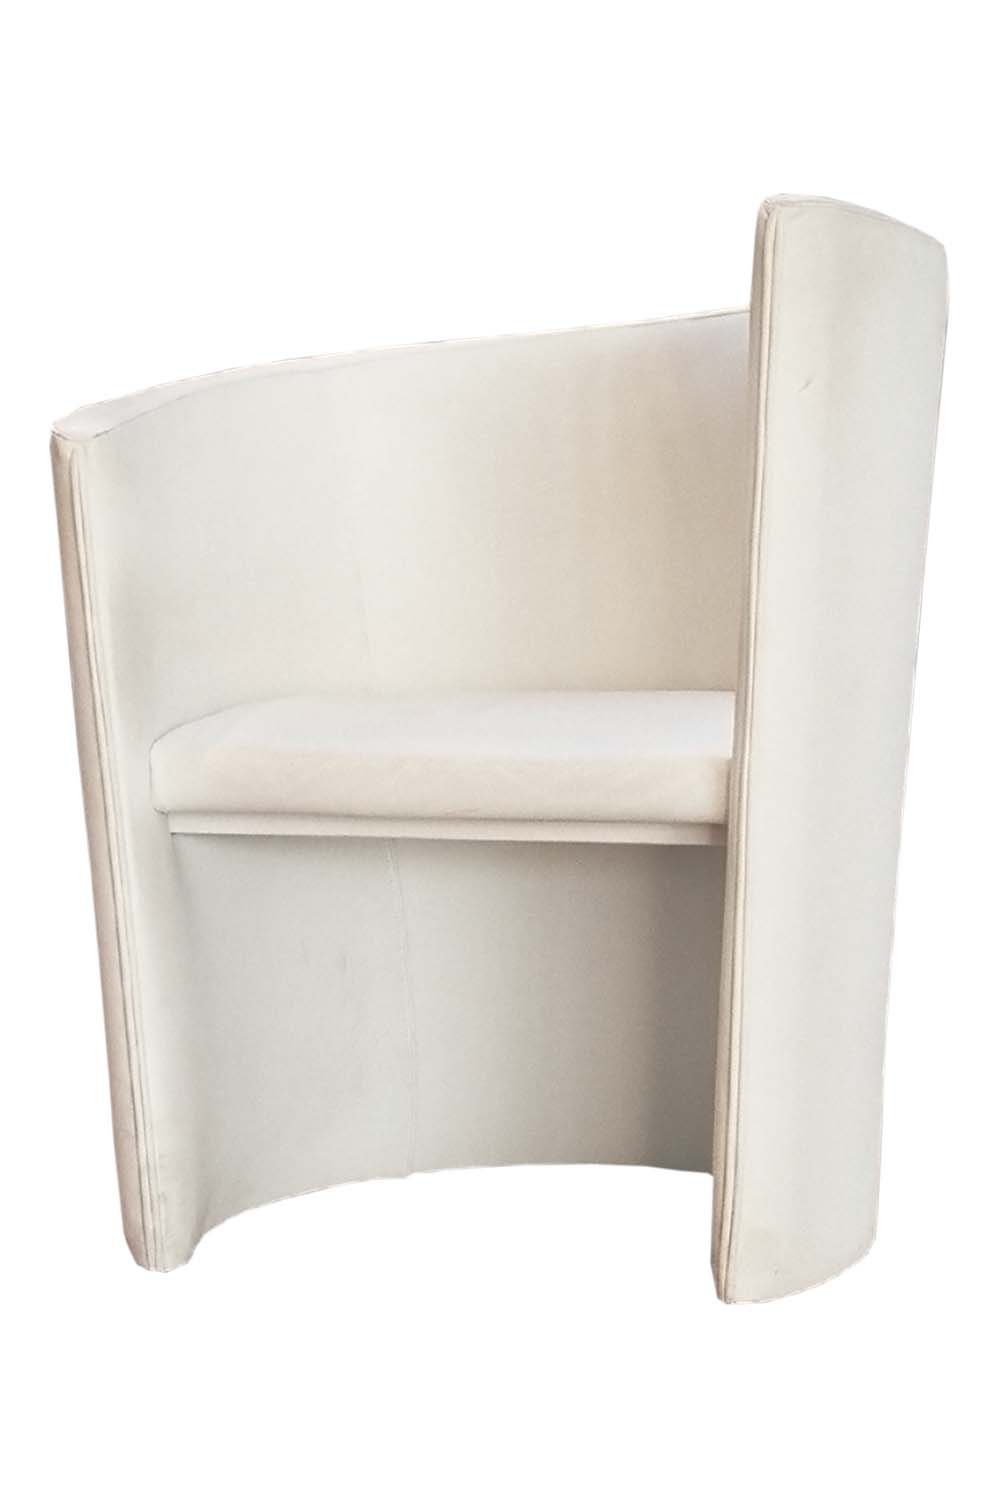 Unter anderem designt Heinz Neumann auch andere Gegenstände wie Vasen, Aschen­becher, aber auch Tische oder den »Swing«-Sessel.